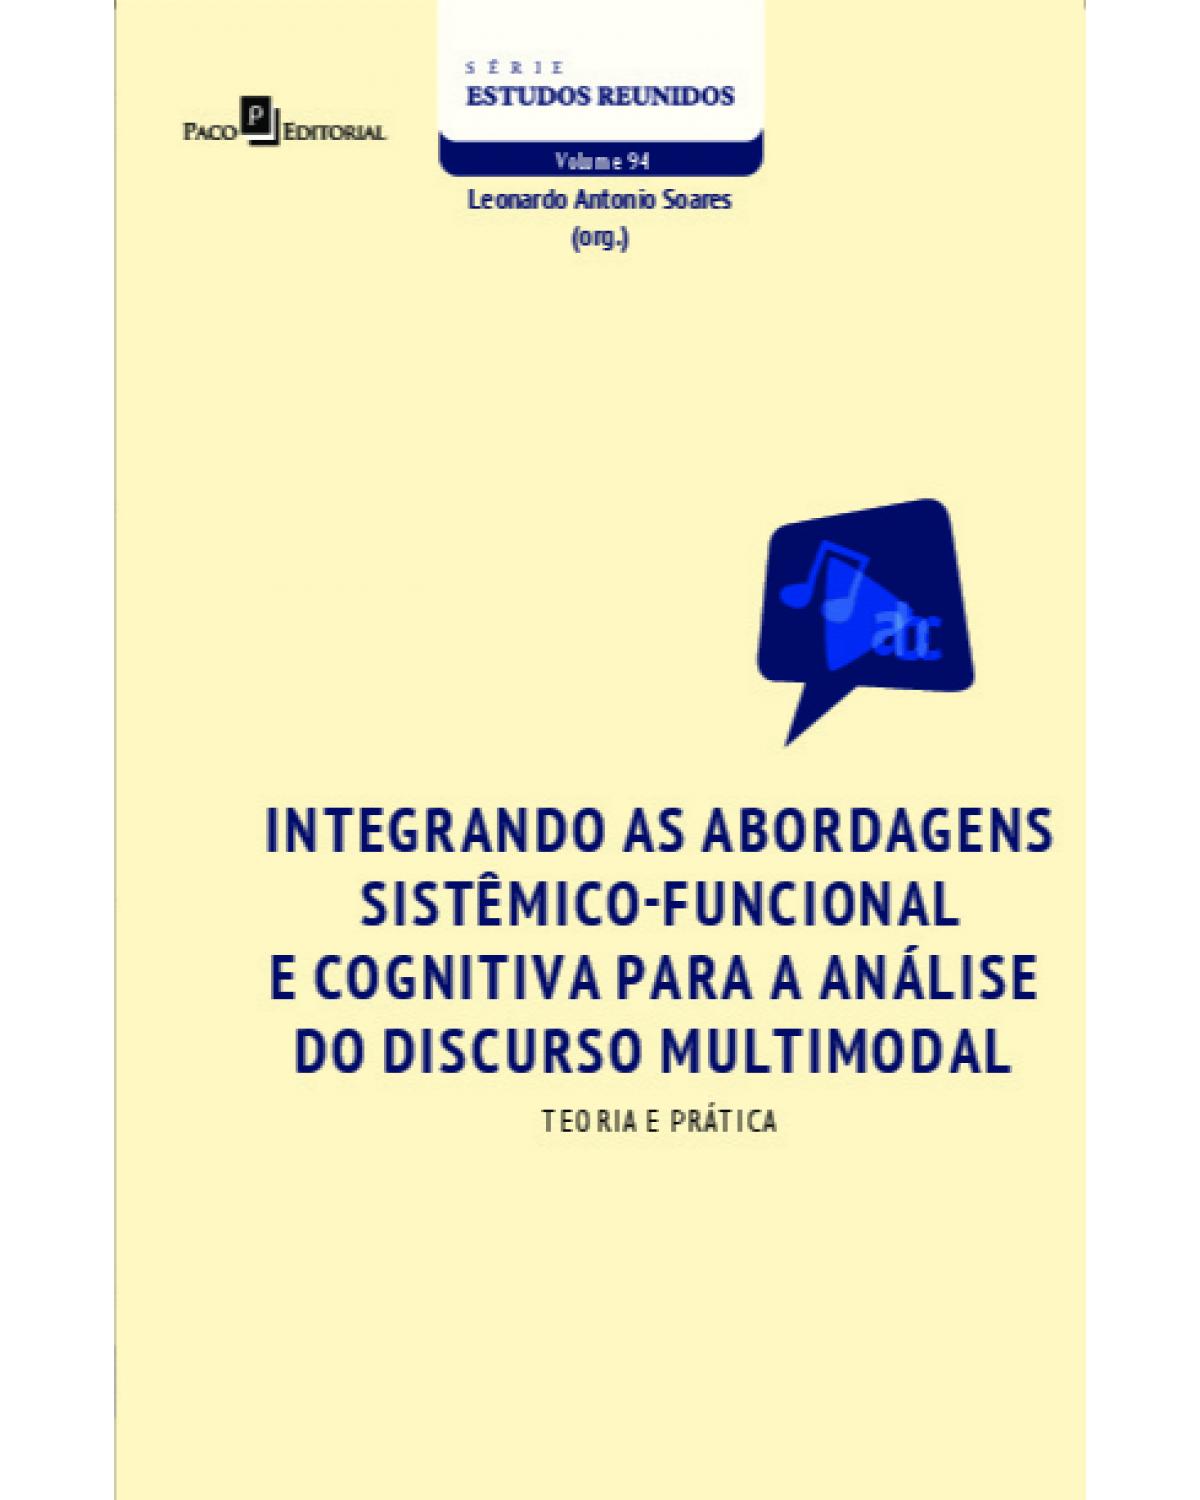 Integrando as abordagens sistêmico-funcional e cognitiva para a análise do discurso multimodal - teoria e prática - 1ª Edição | 2021